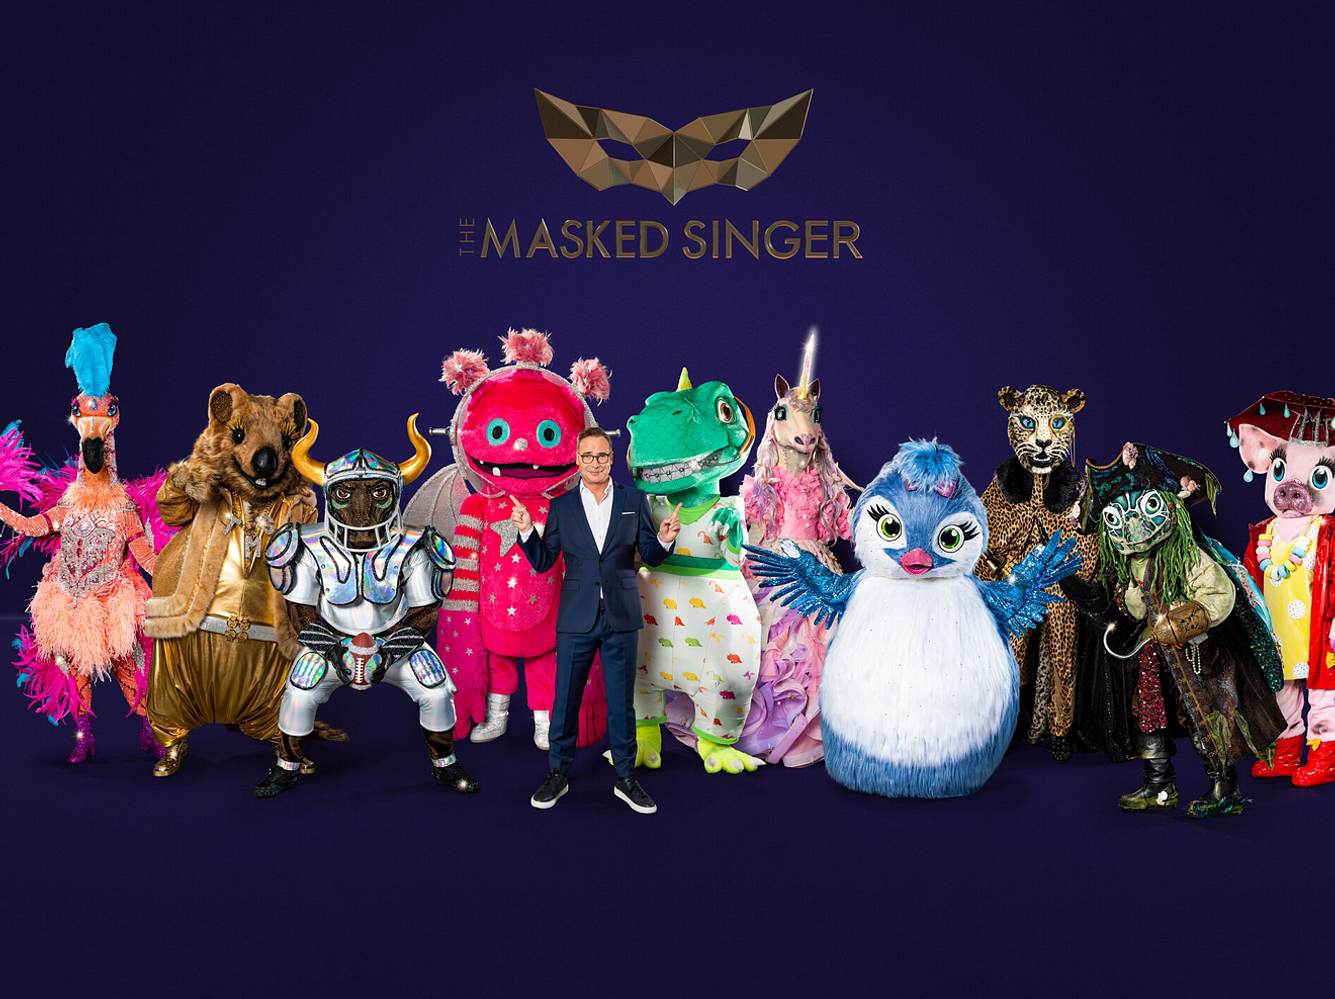 The Masked Singer 2021 bietet wieder viele spannende Kostüme